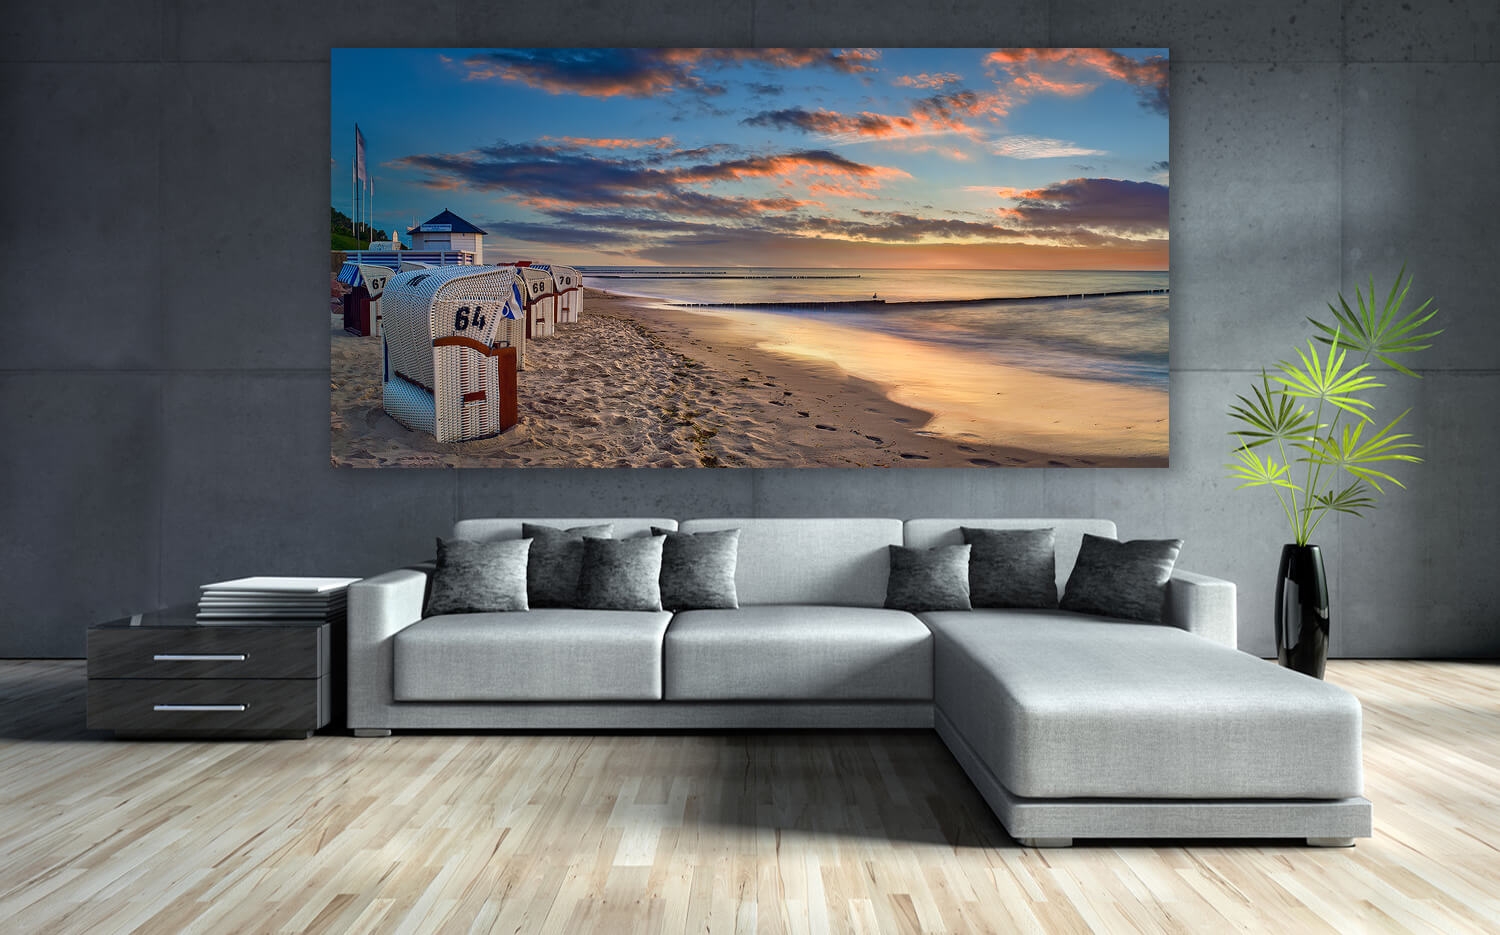 Am o. Canvas x 60 Grösse Ostsee Strand Ausführung (2:1) Küchenspiegel Wandbild Leinwand der 30cm